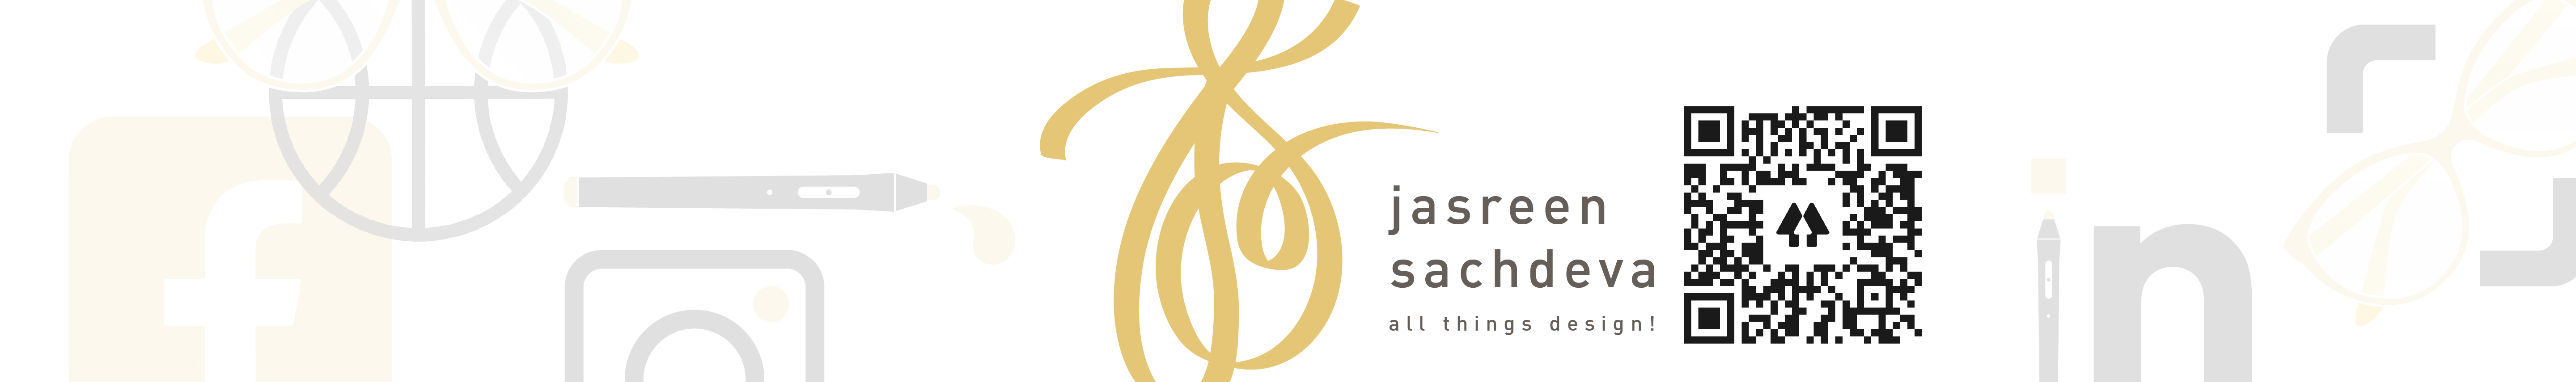 Banner de perfil de Jasreen Sachdeva